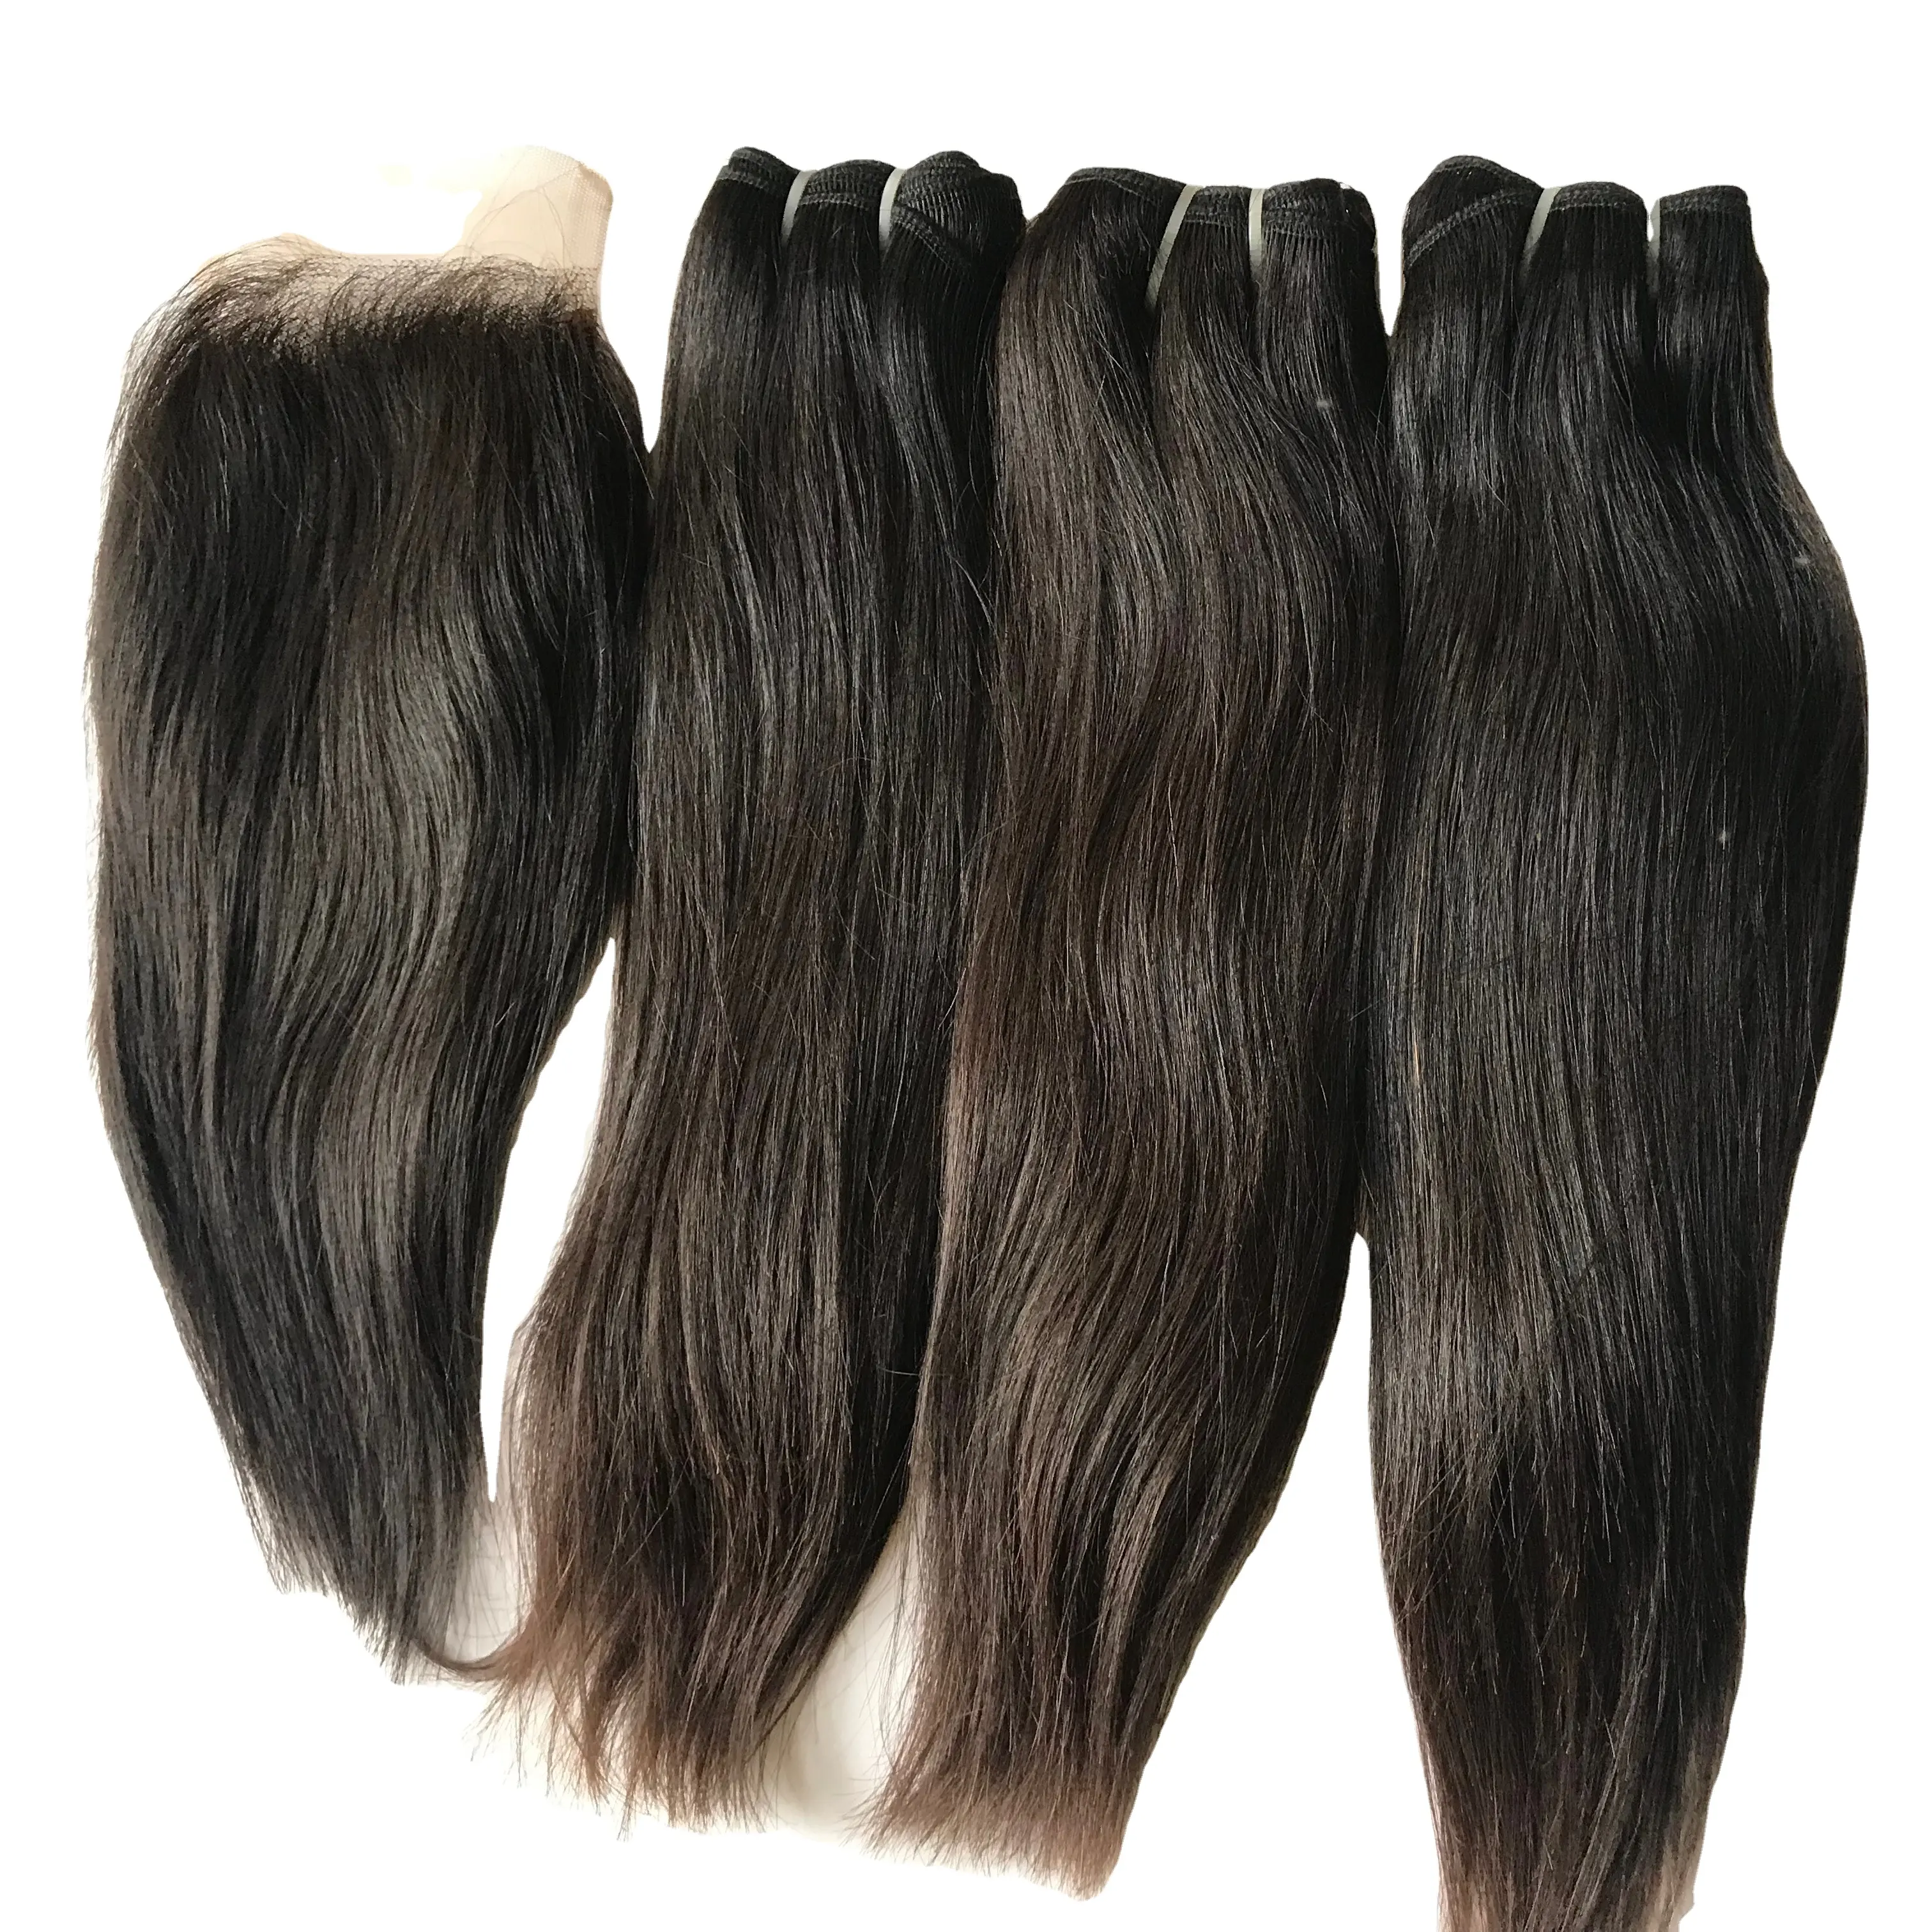 Distributeurs de tissage de cheveux d'excellence de qualité supérieure extensions de cheveux humains naturels de cheveux vierges remy bruts perruques d'Inde